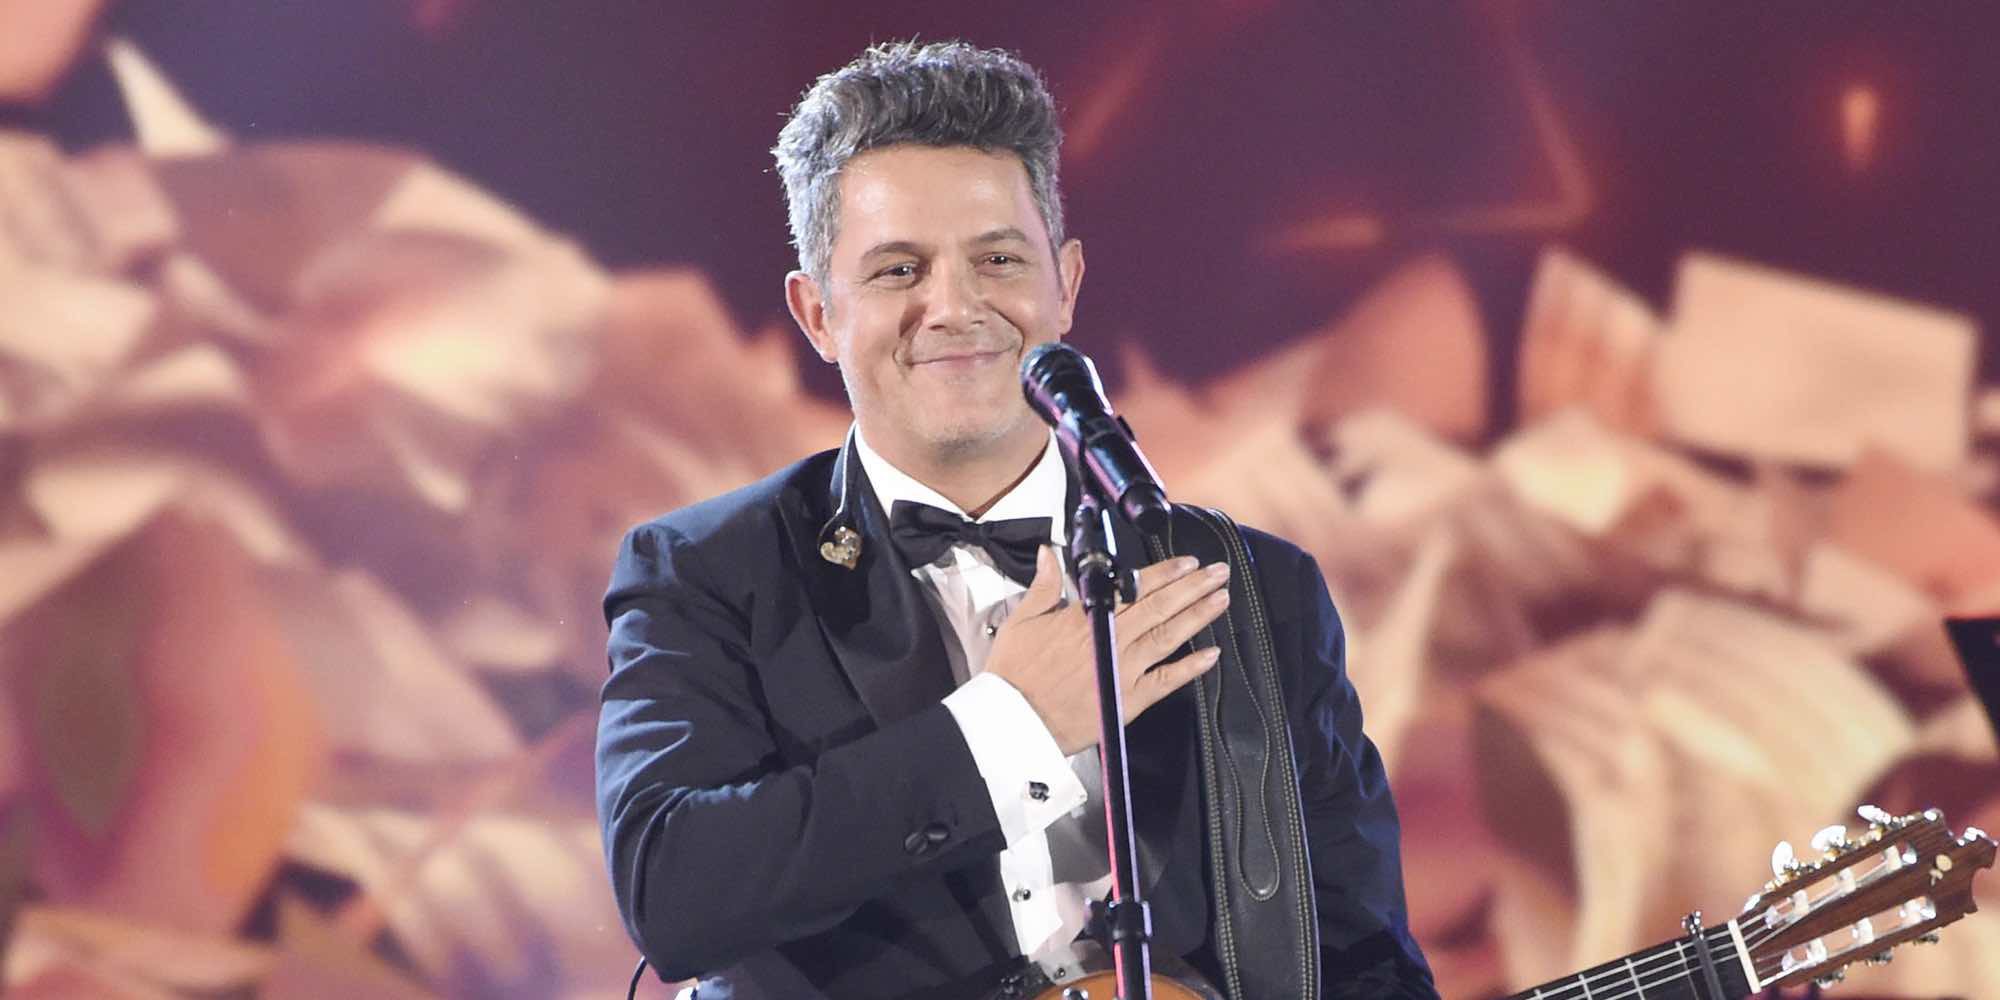 Alejandro Sanz vive su noche más mágica al recibir el Premio Persona del Año 2017 de los Grammy Latinos